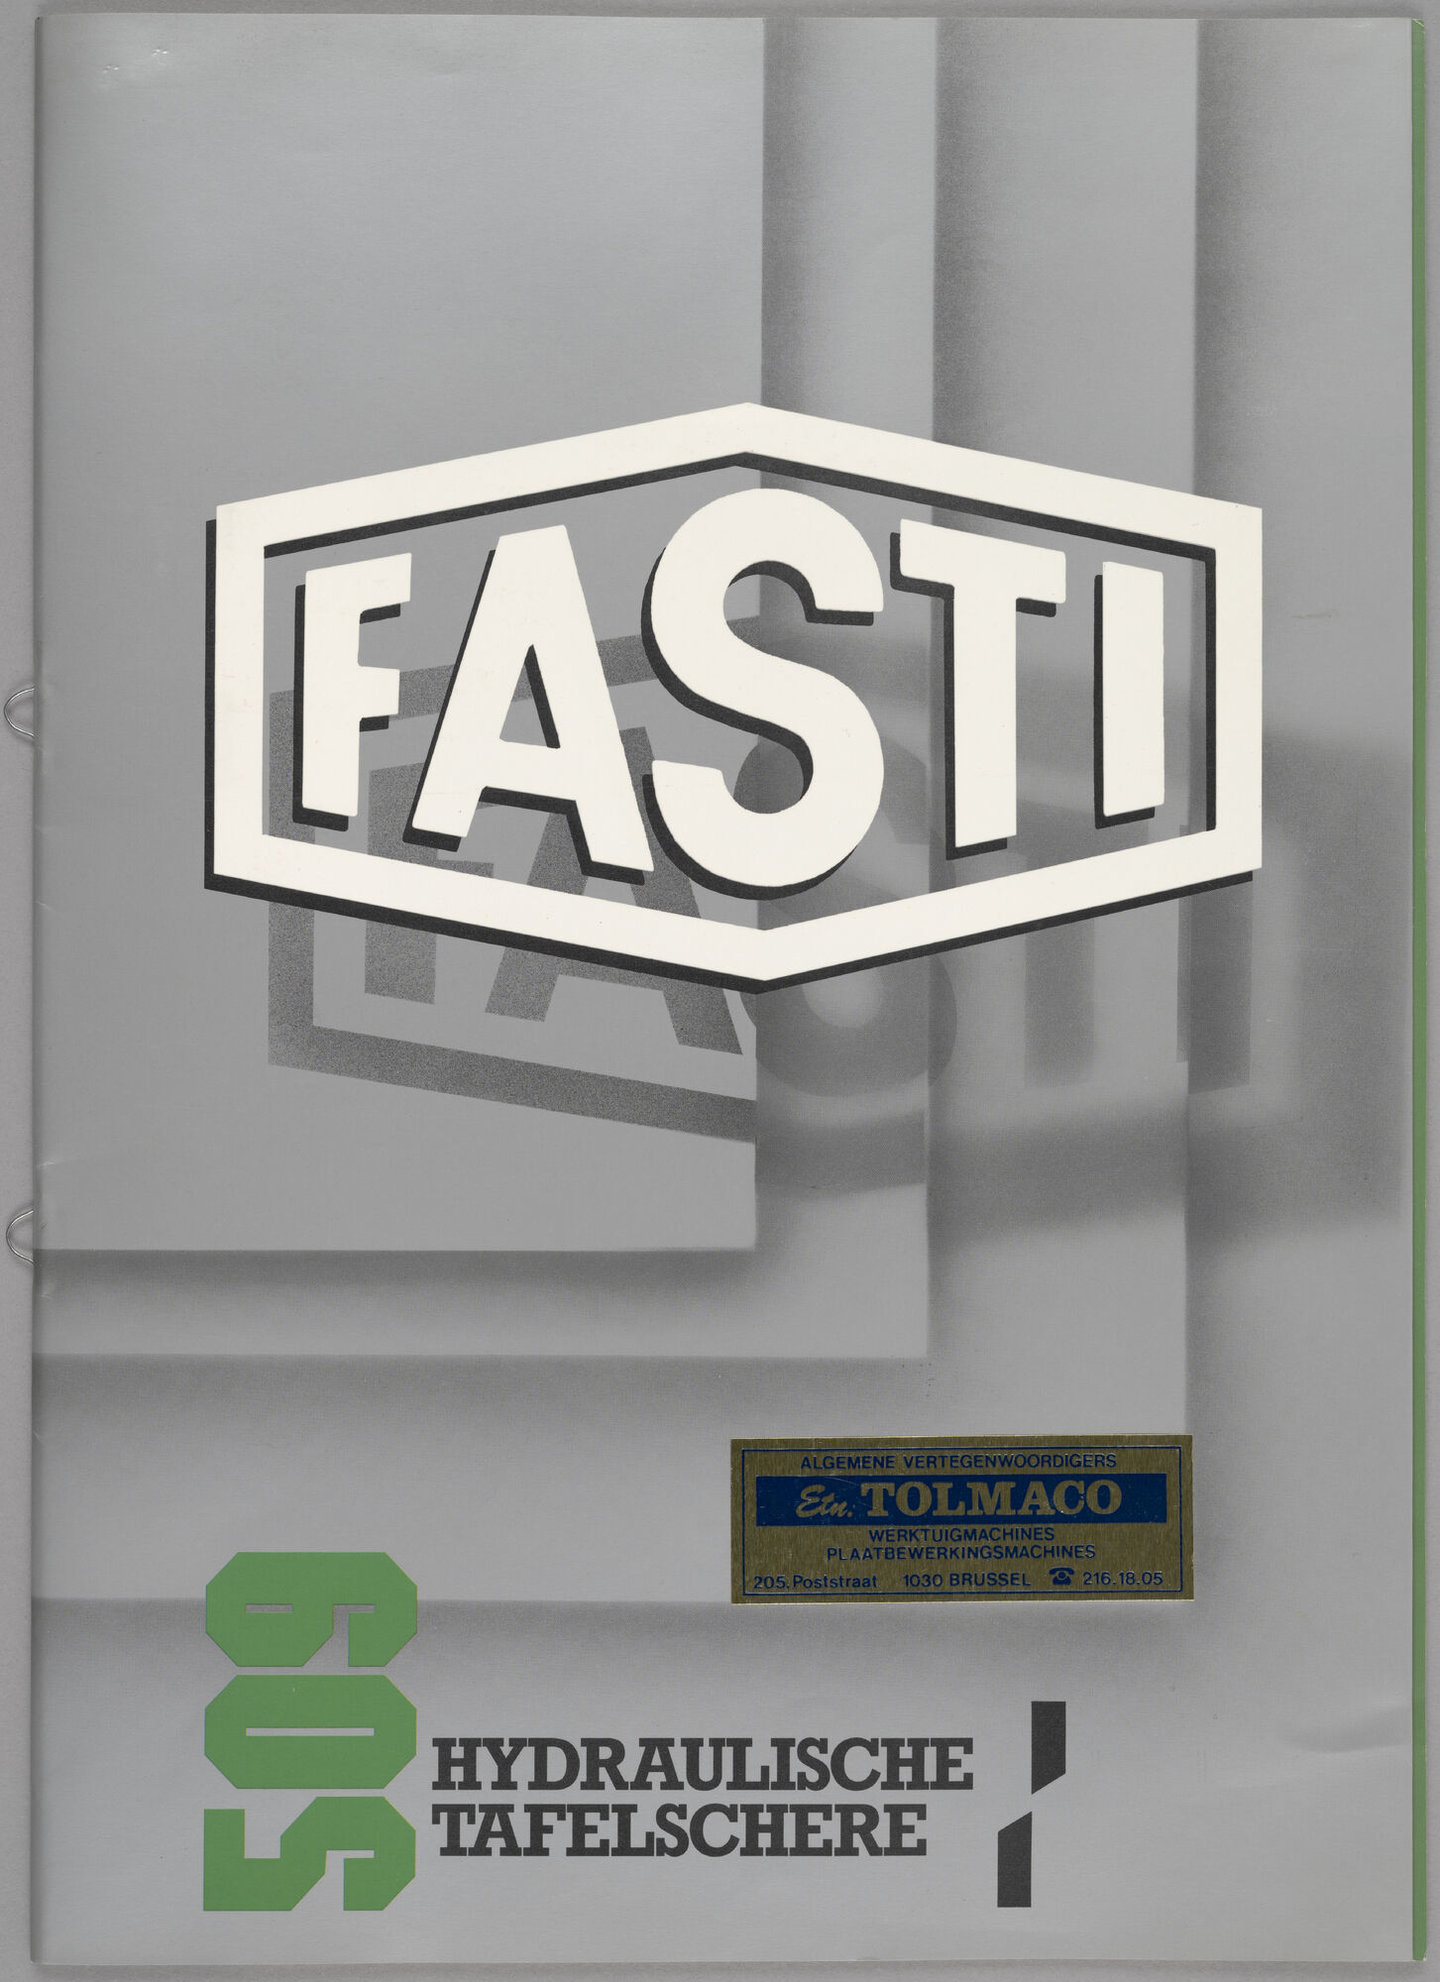 Productbrochure met hydraulische guillotinescharen van het merk Fasti